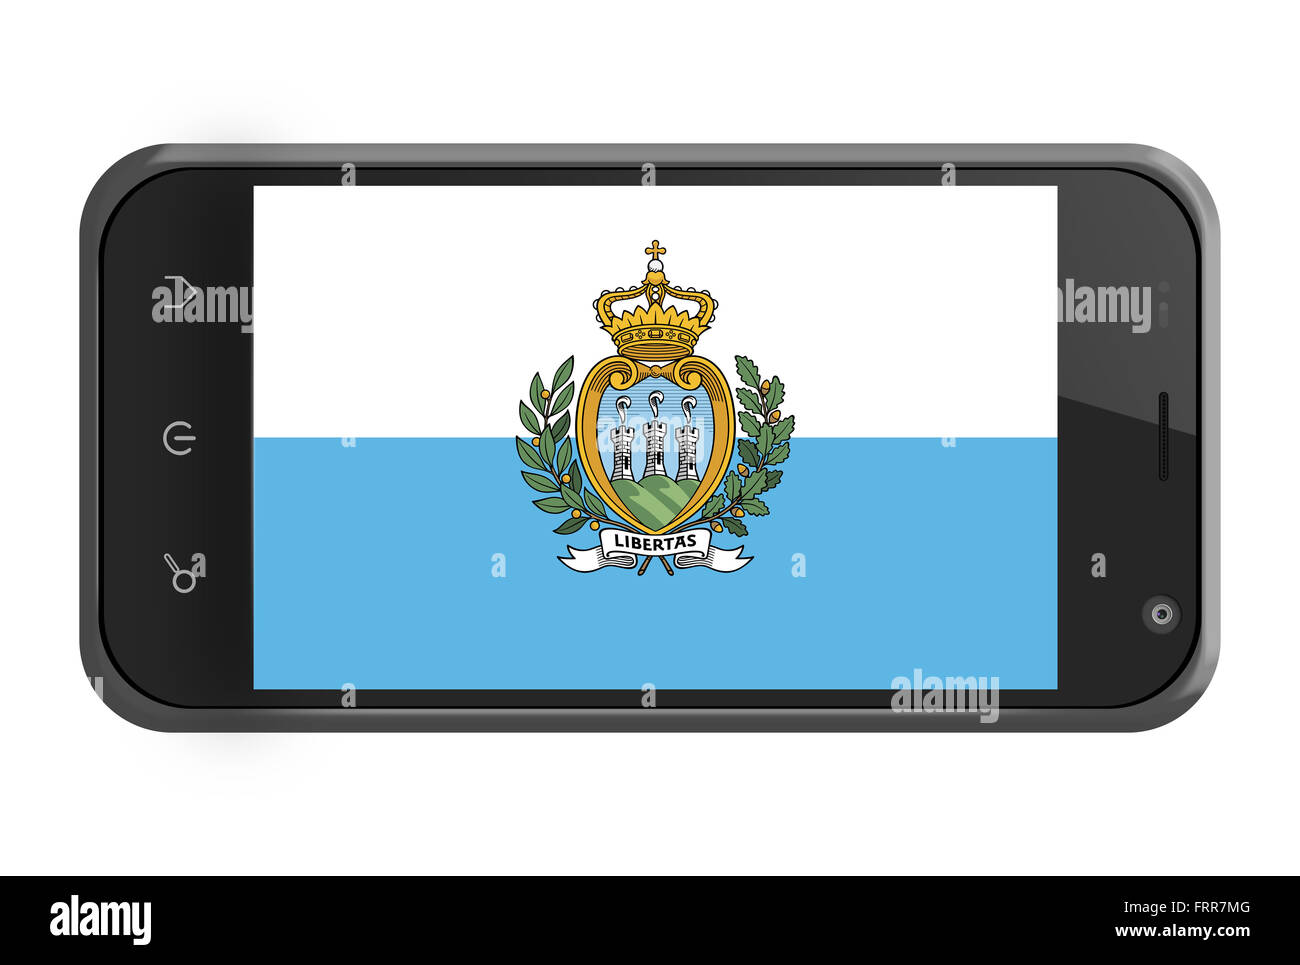 Saint-marin drapeau sur l'écran du smartphone isolated on white Banque D'Images